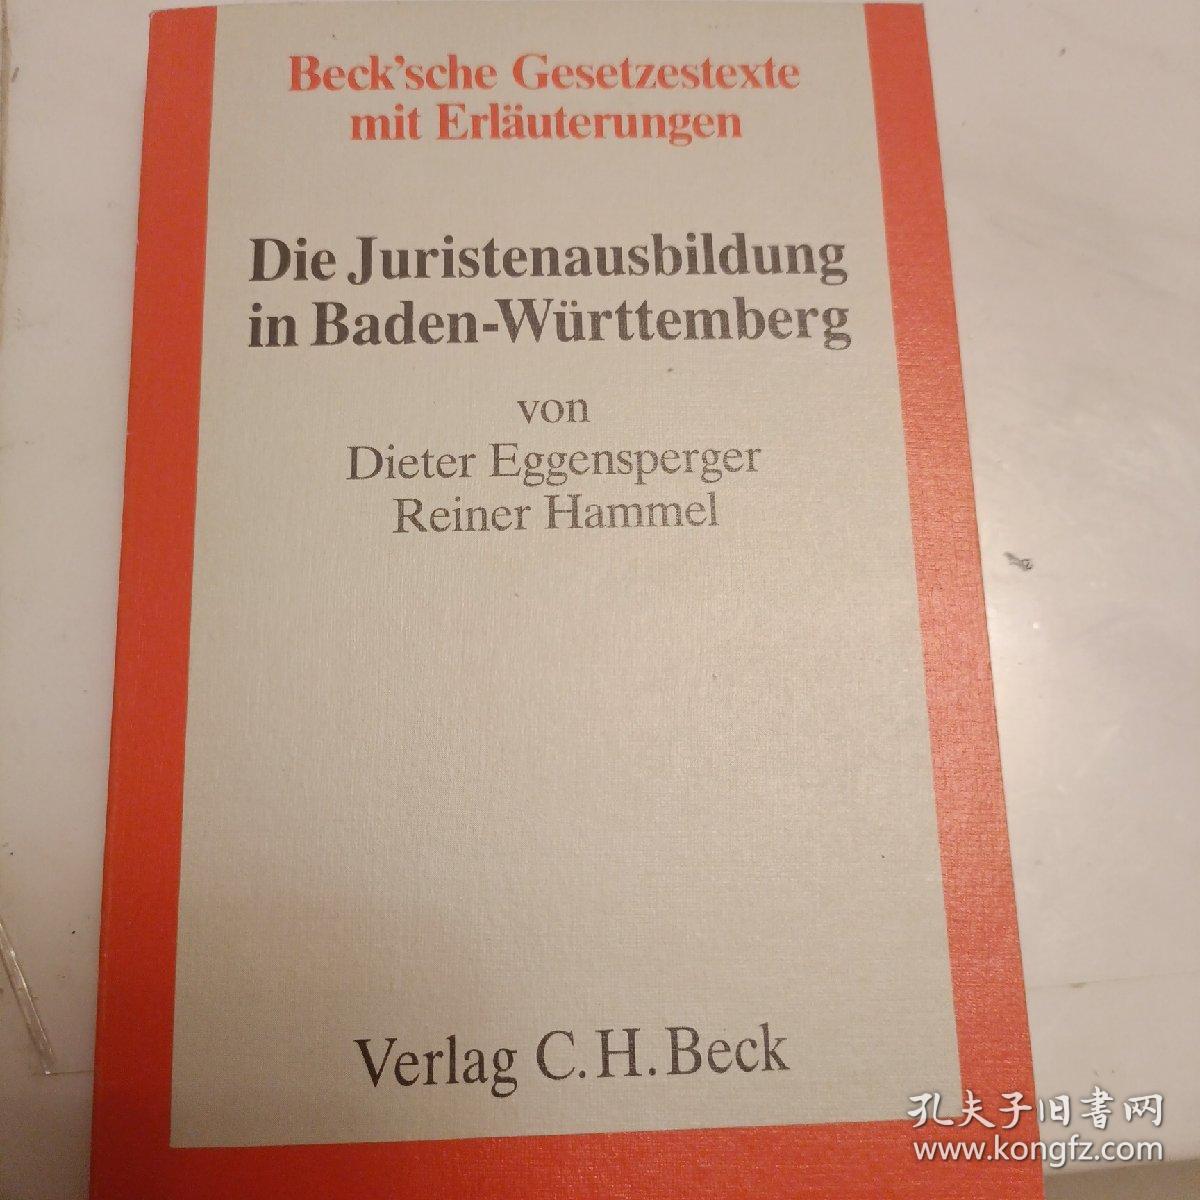 德文 ,贝克的立法文本及其解释
巴登-符腾堡的法律培训
Beck'sche Gesetzestexte mit Erlauterungen 
Die Juristenausbildung in Baden-Wirttemberg 
von Dieter Eggensperger Reiner Hammel 
Verlag C.H.Beck